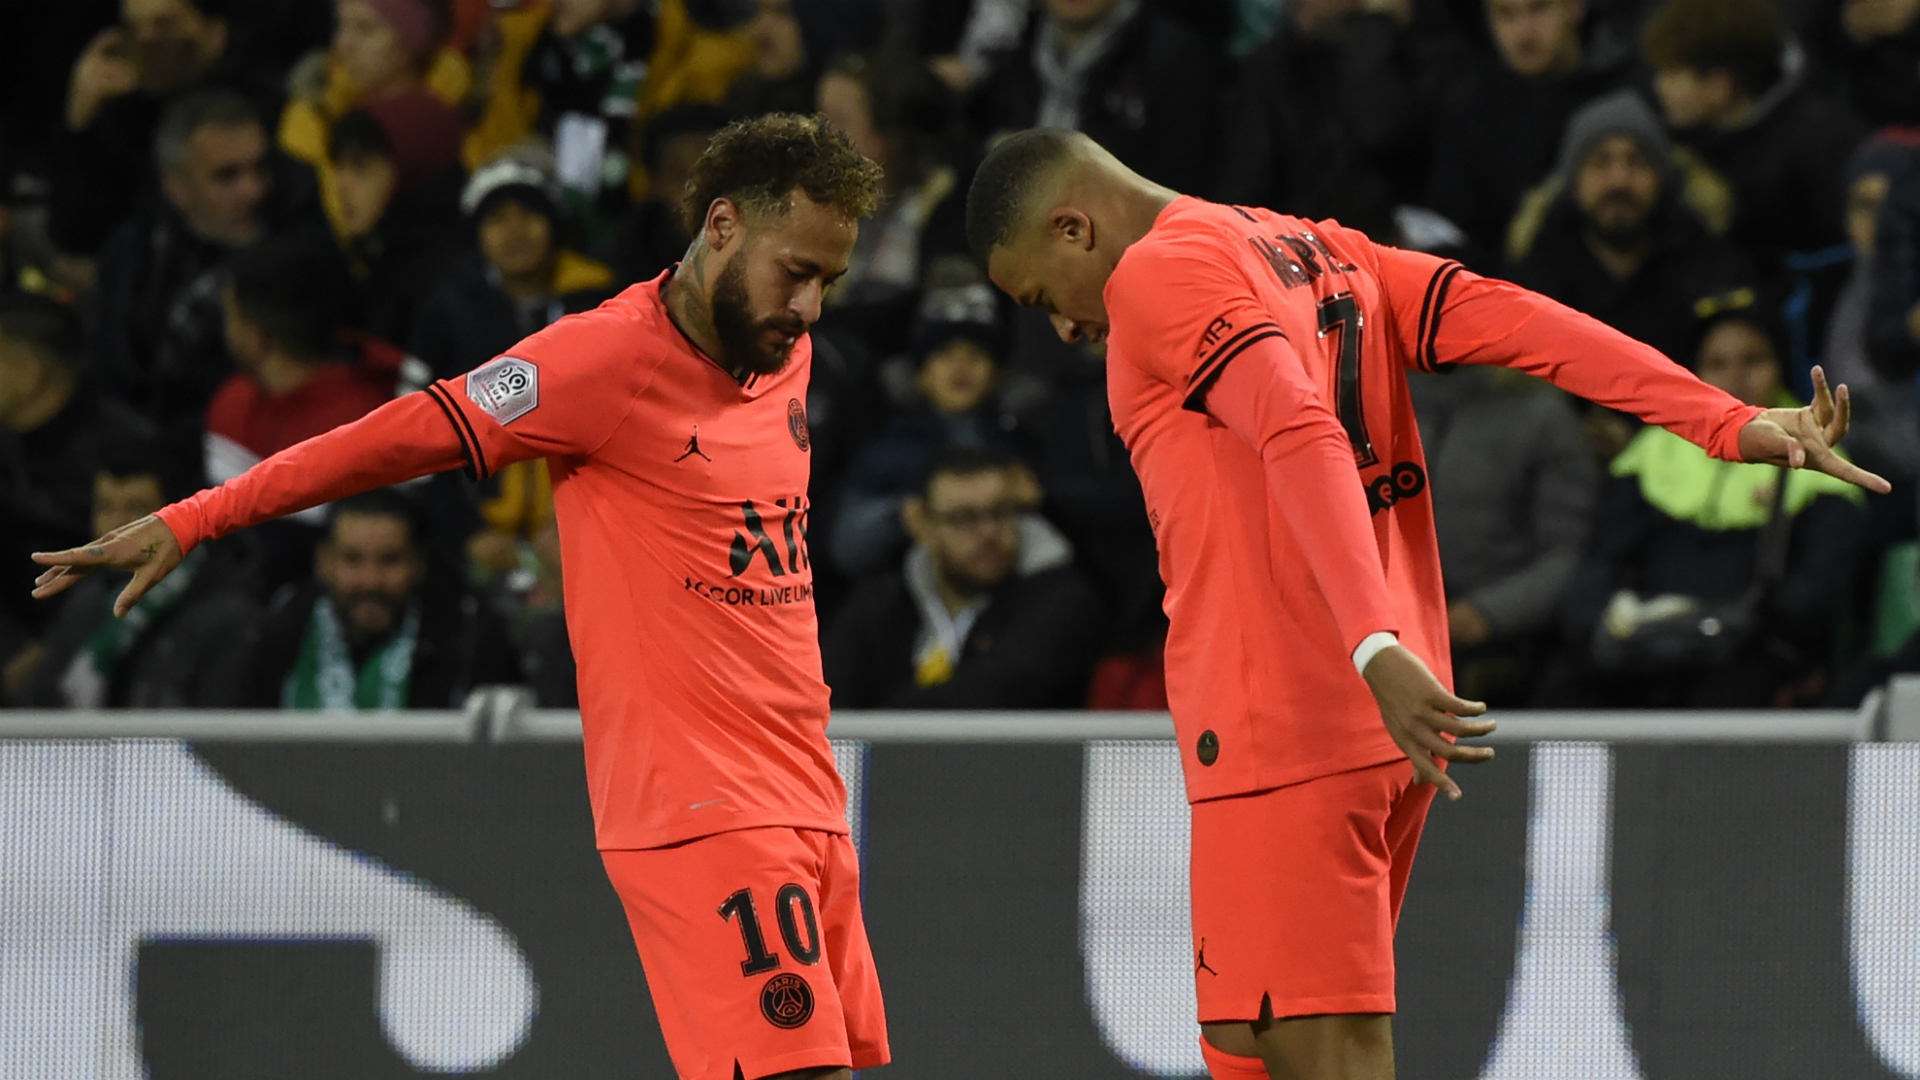 Saint-Etienne 0-4 Paris Saint-Germain: Mbappe double sends champions seven points clear